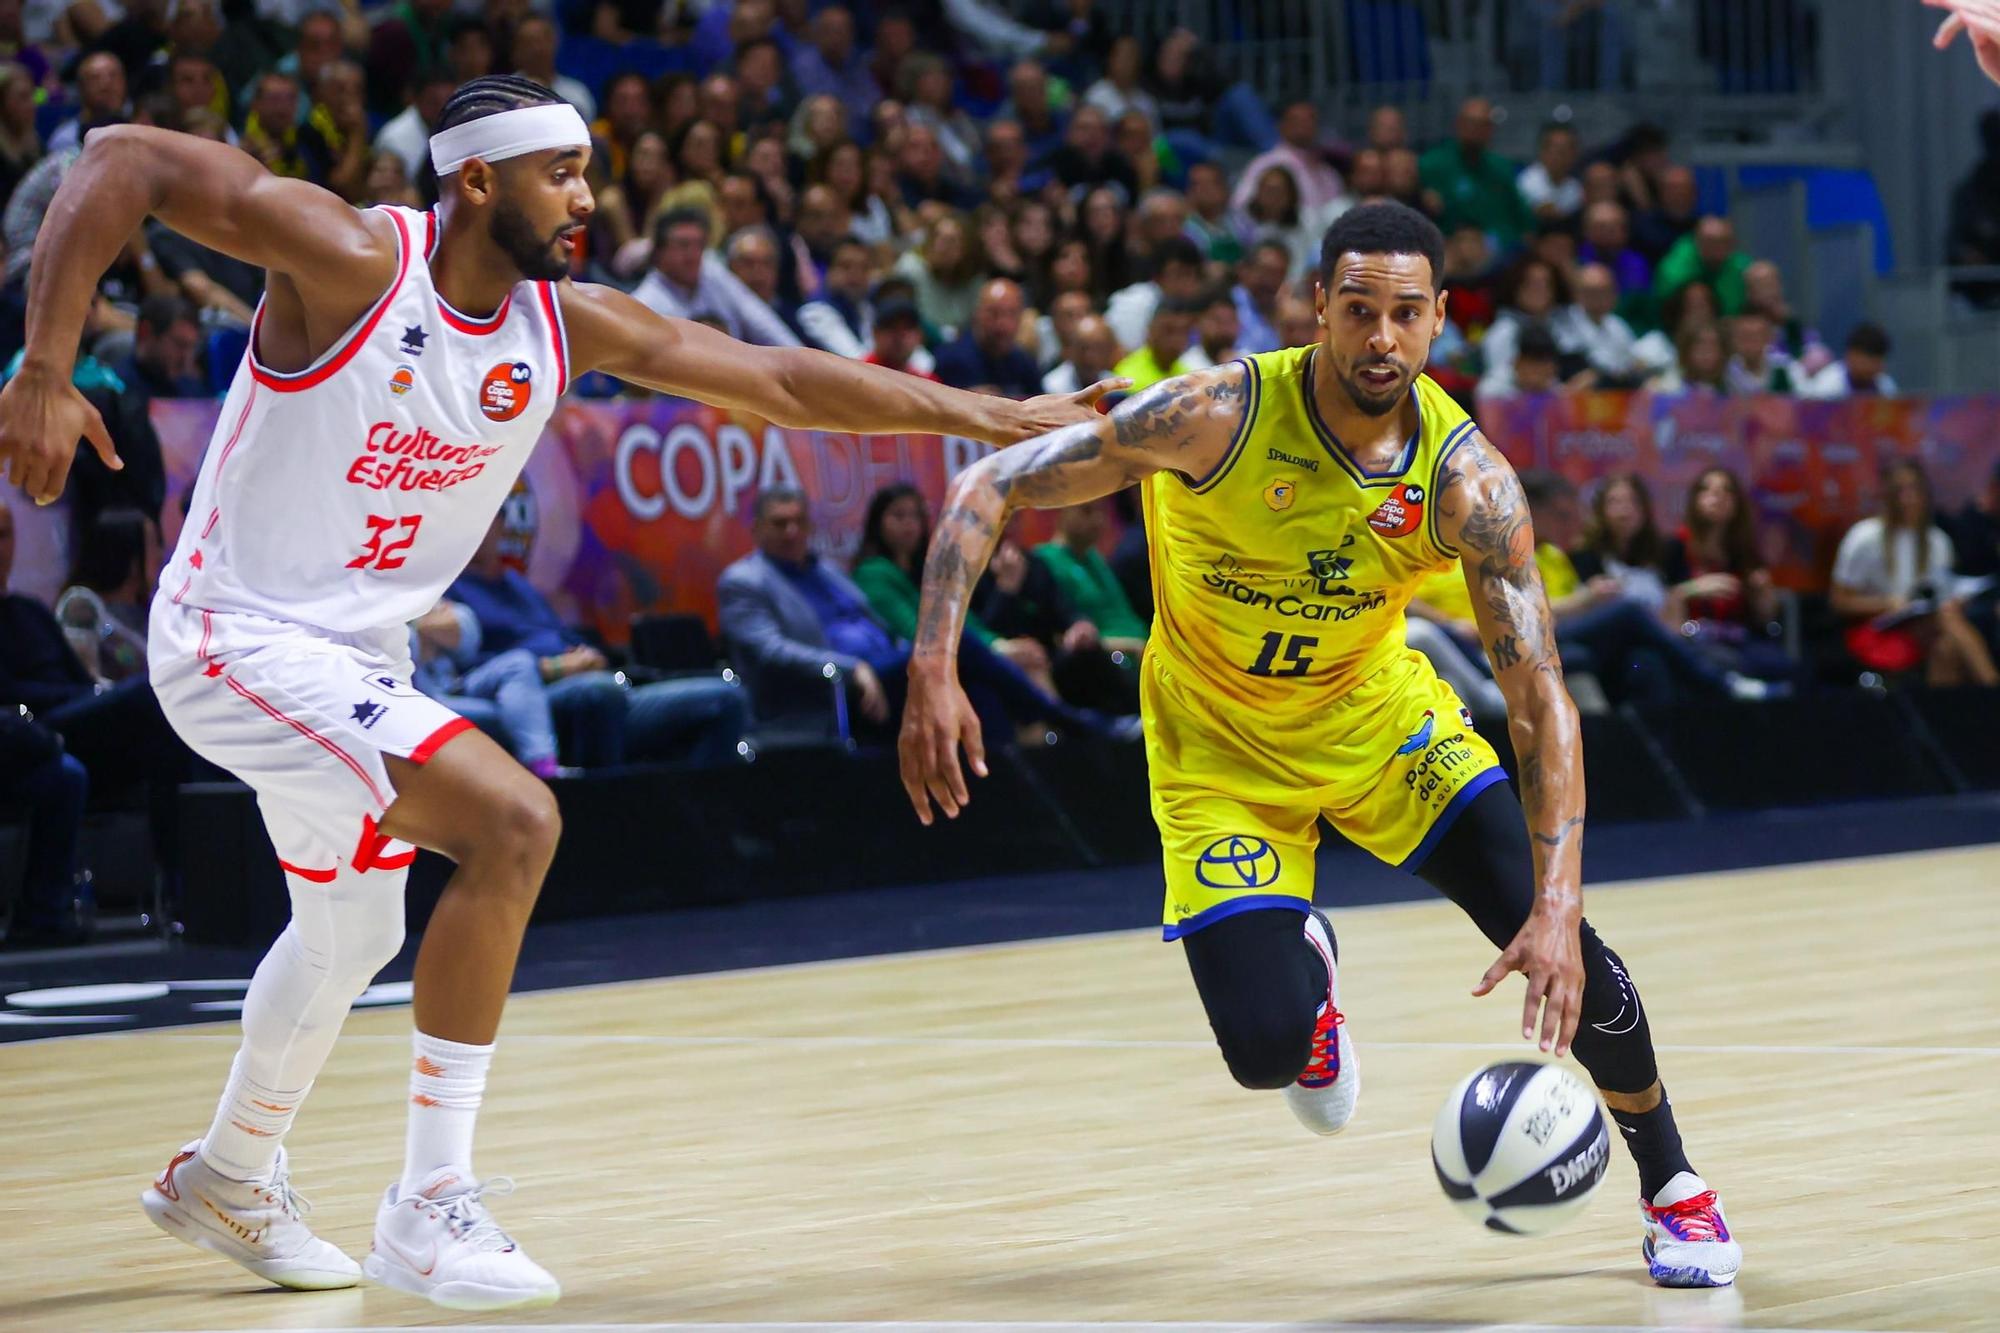 Copa del Rey de baloncesto: Dreamland Gran Canaria - Valencia Basket